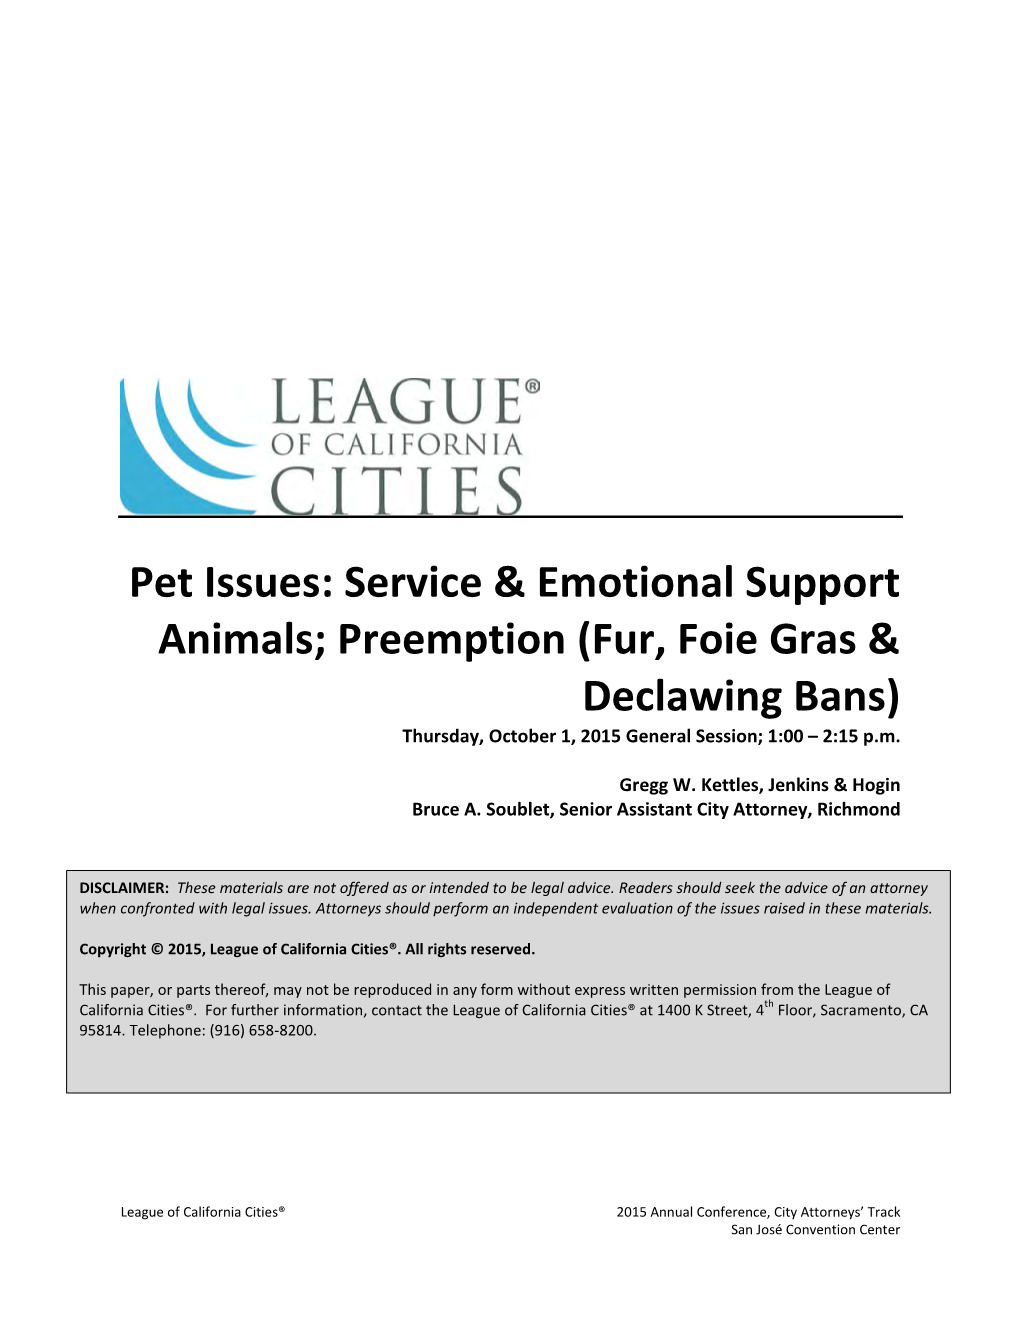 Preemption (Fur, Foie Gras & Declawing Bans)